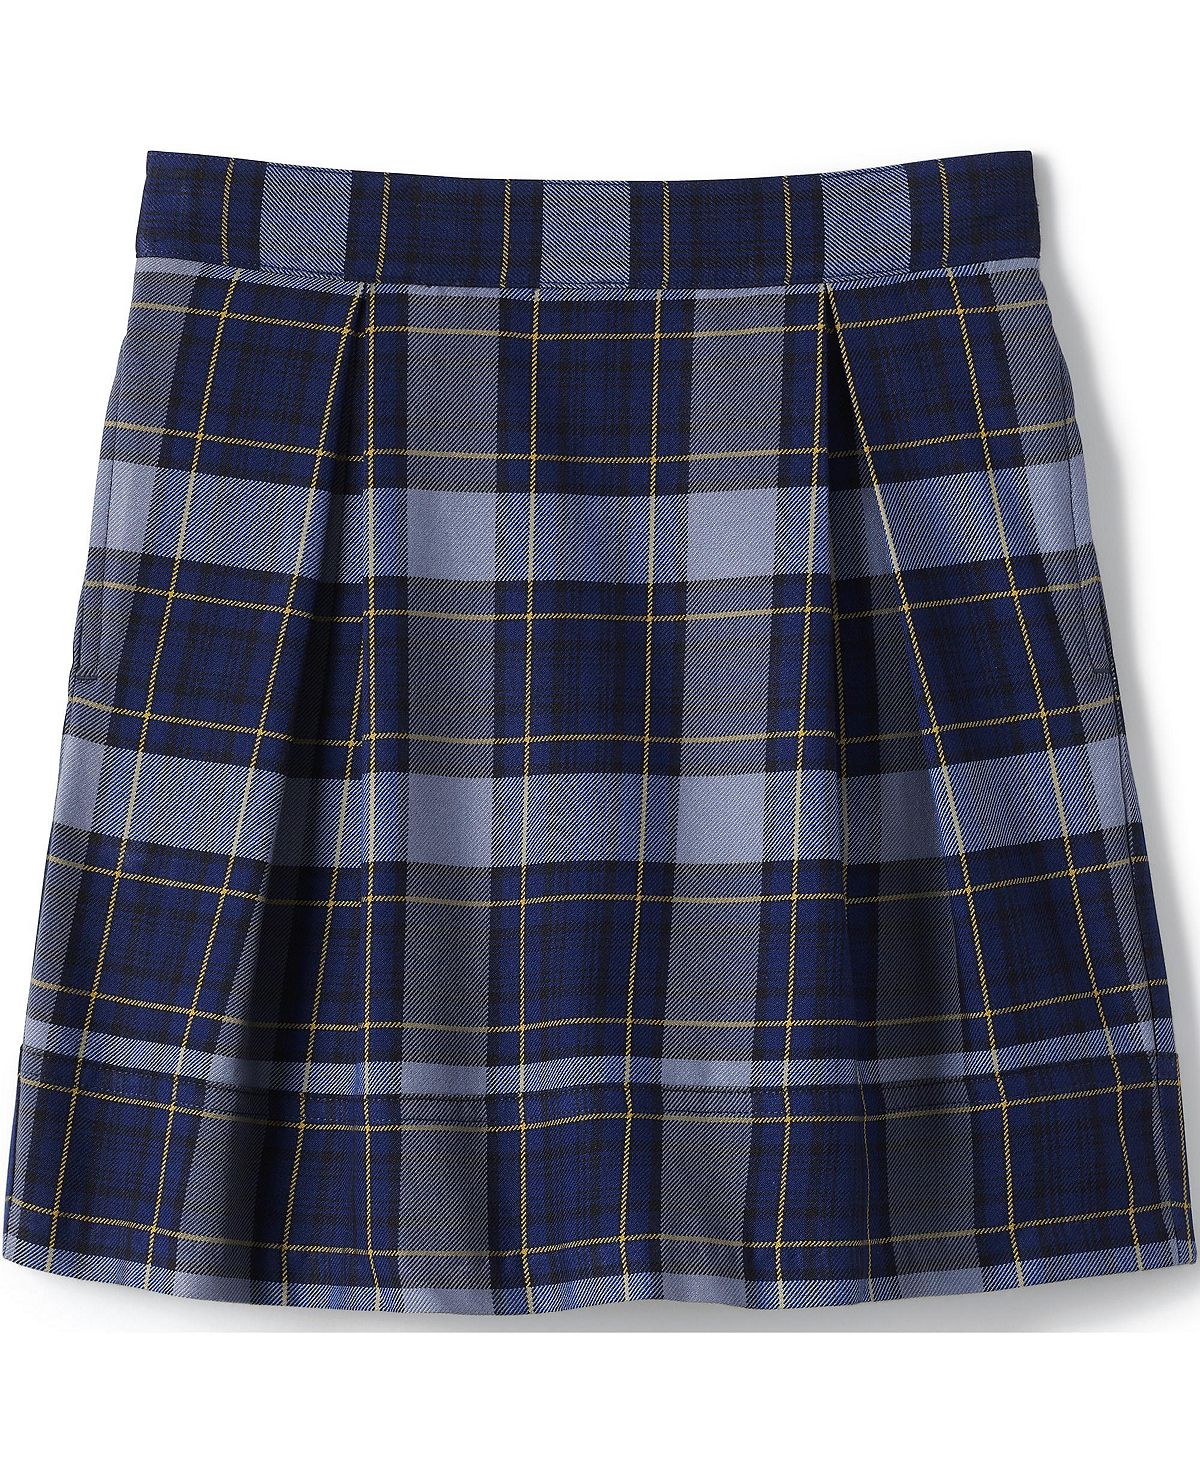 Школьная форма для девочек, клетчатая плиссированная юбка до колена Lands' End